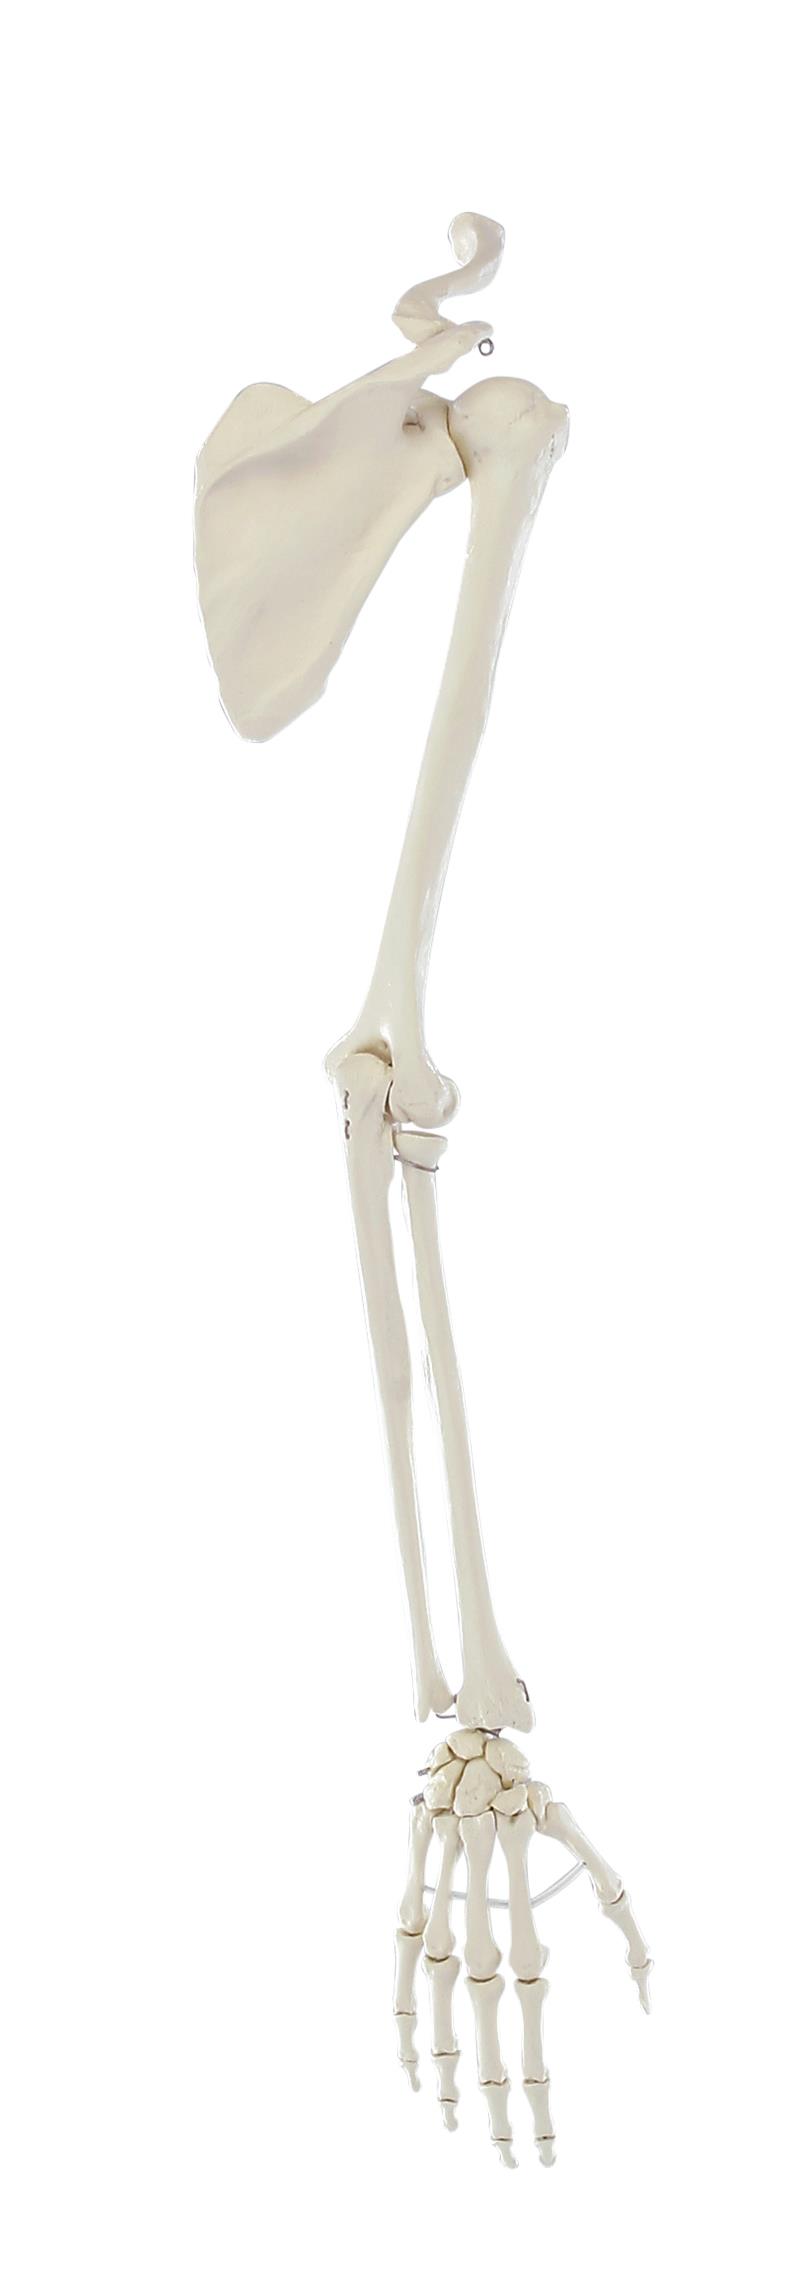 Squelette de la main avec ceinture scapulaire